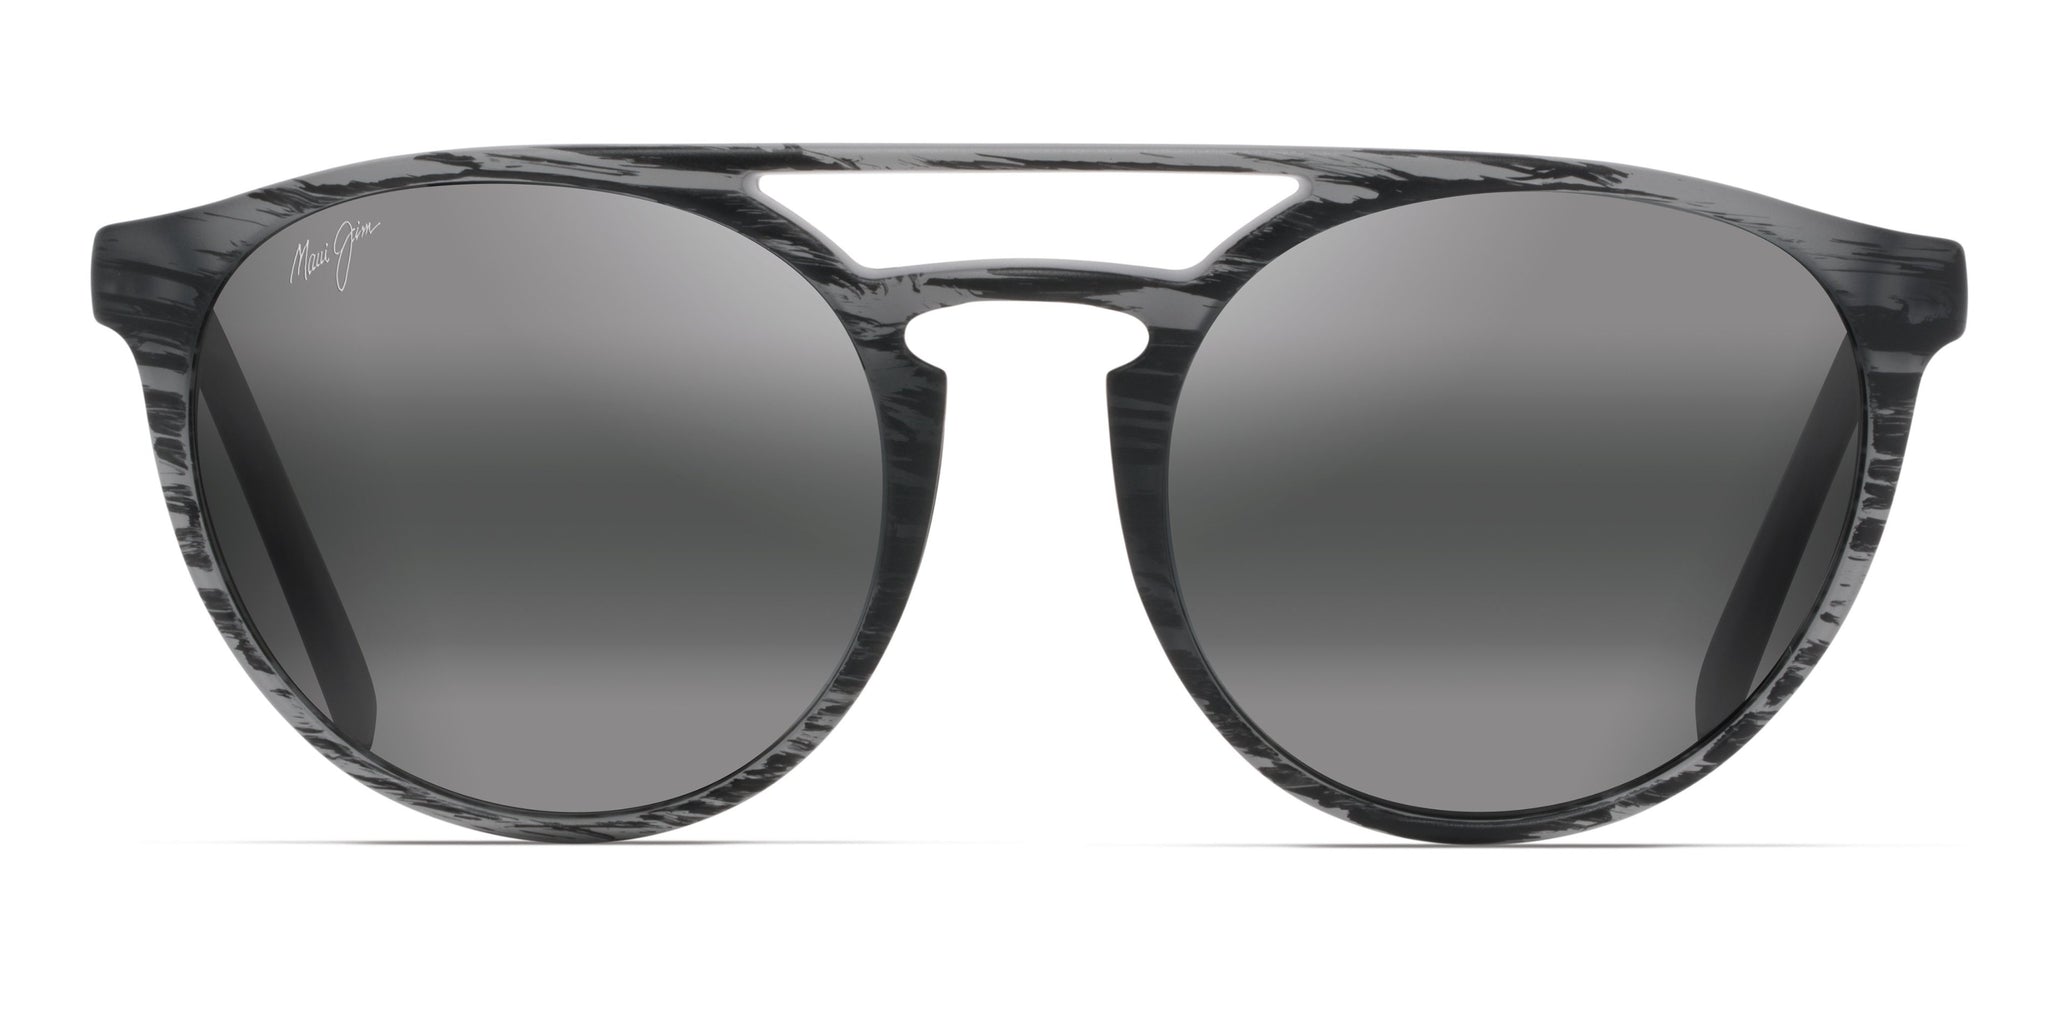 Maui Jim Ah Dang! 781 Sunglasses: Models P781-12C, B781-2M, H781-10,  781-11MS - Flight Sunglasses